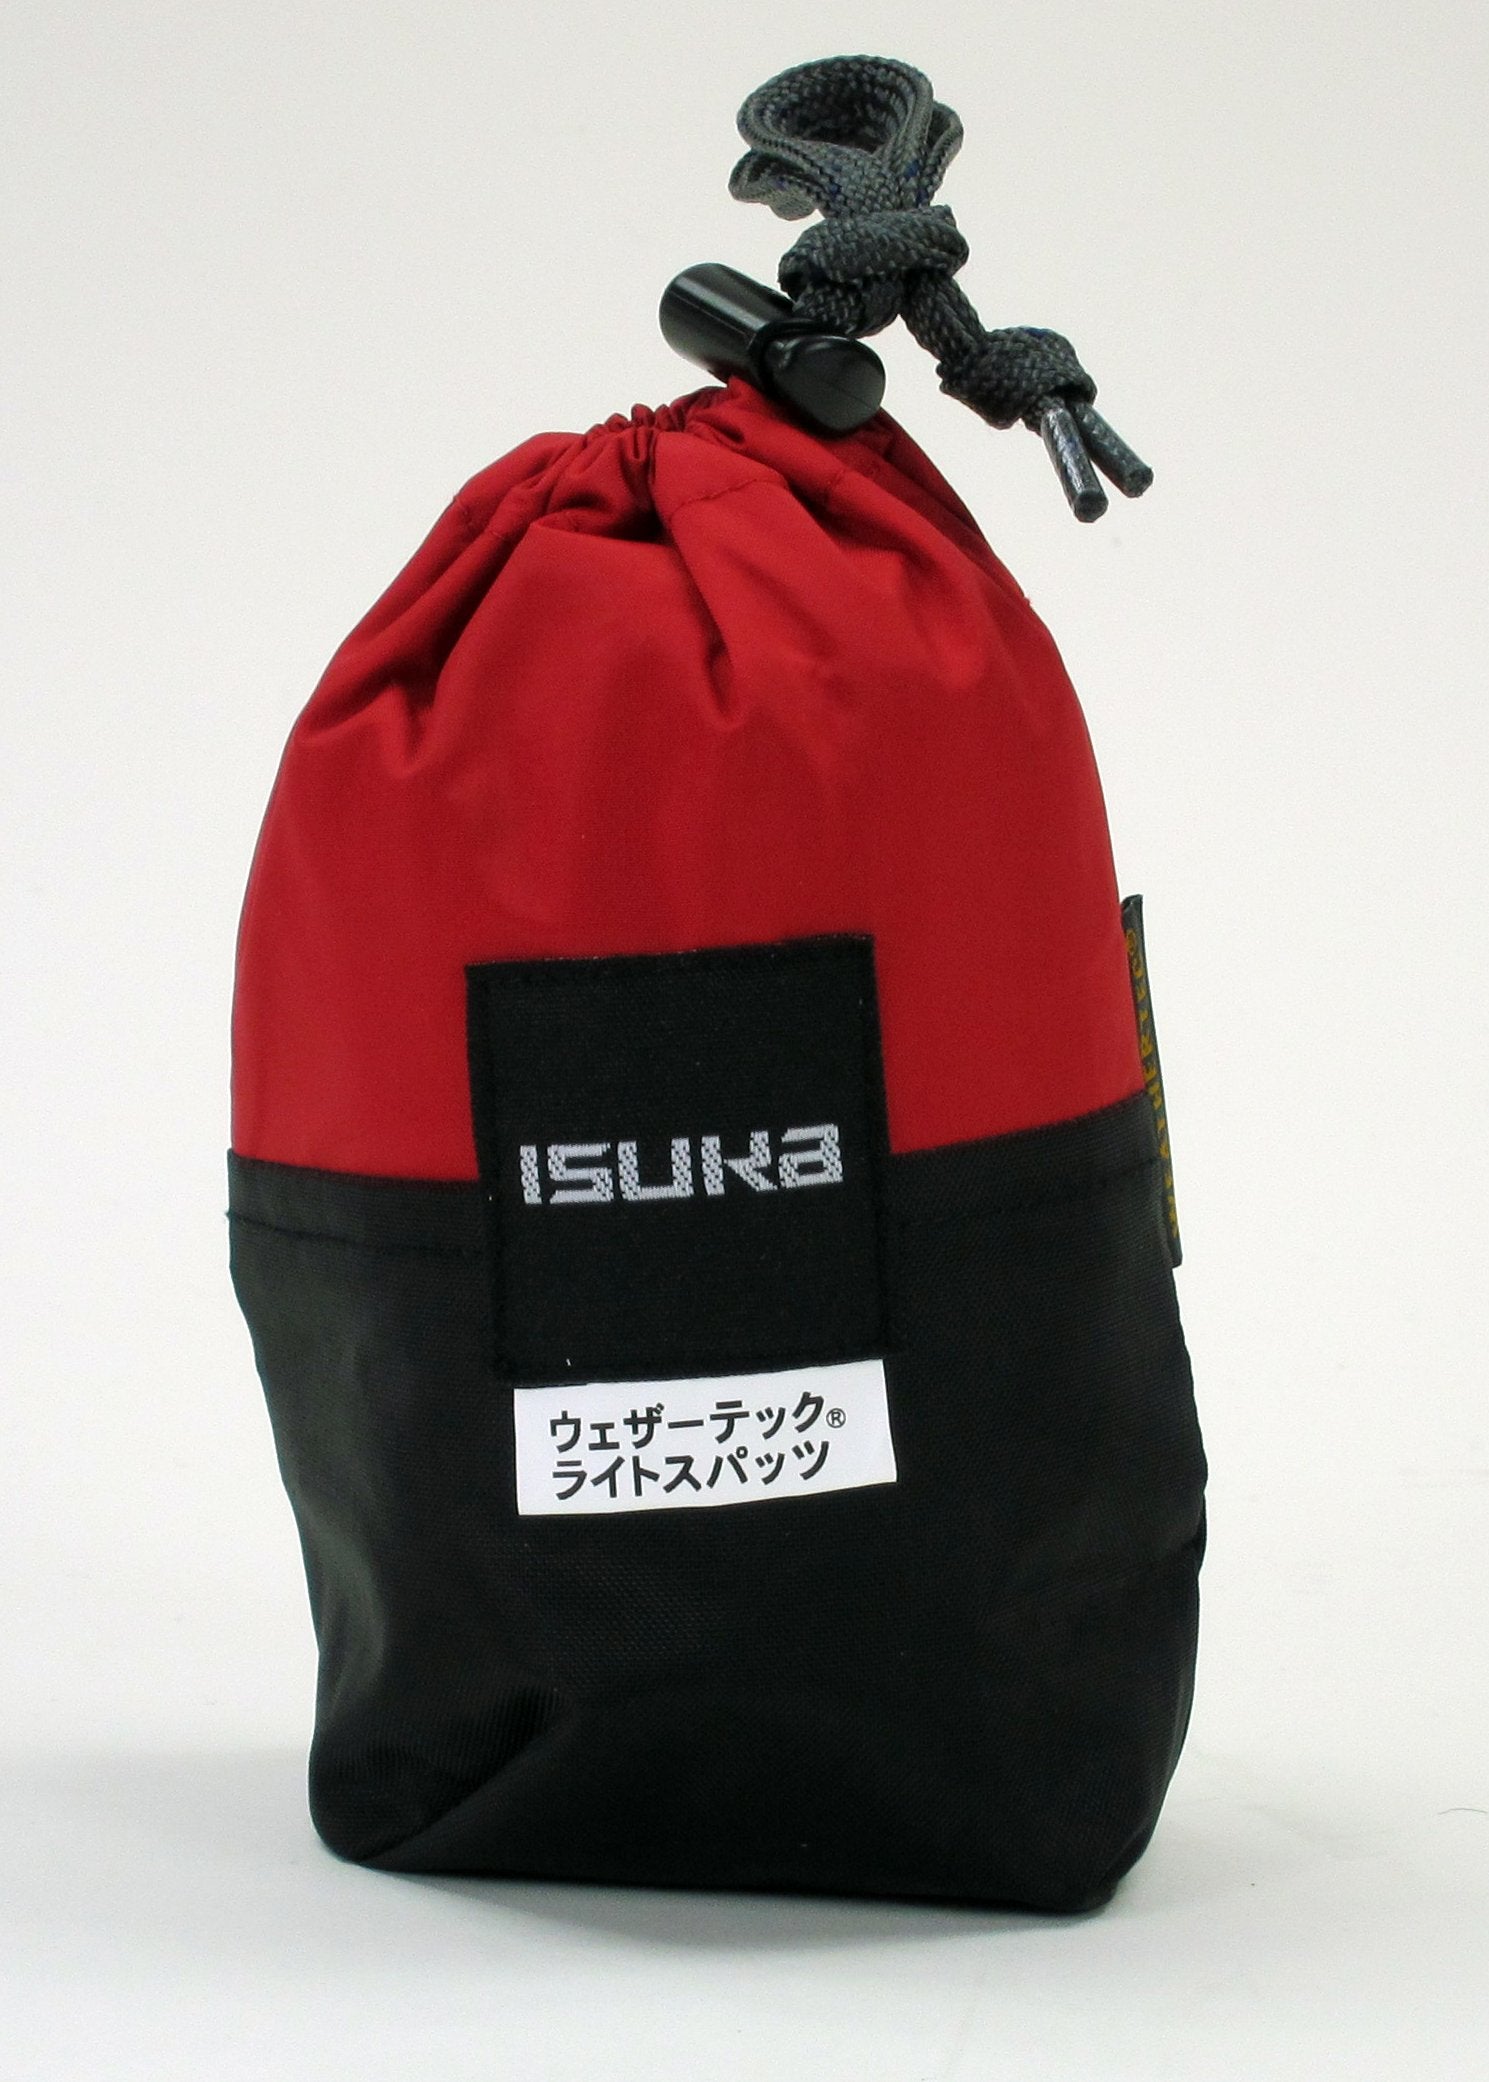 イスカ(ISUKA) ウェザーテック ライトスパッツ レッド 240119